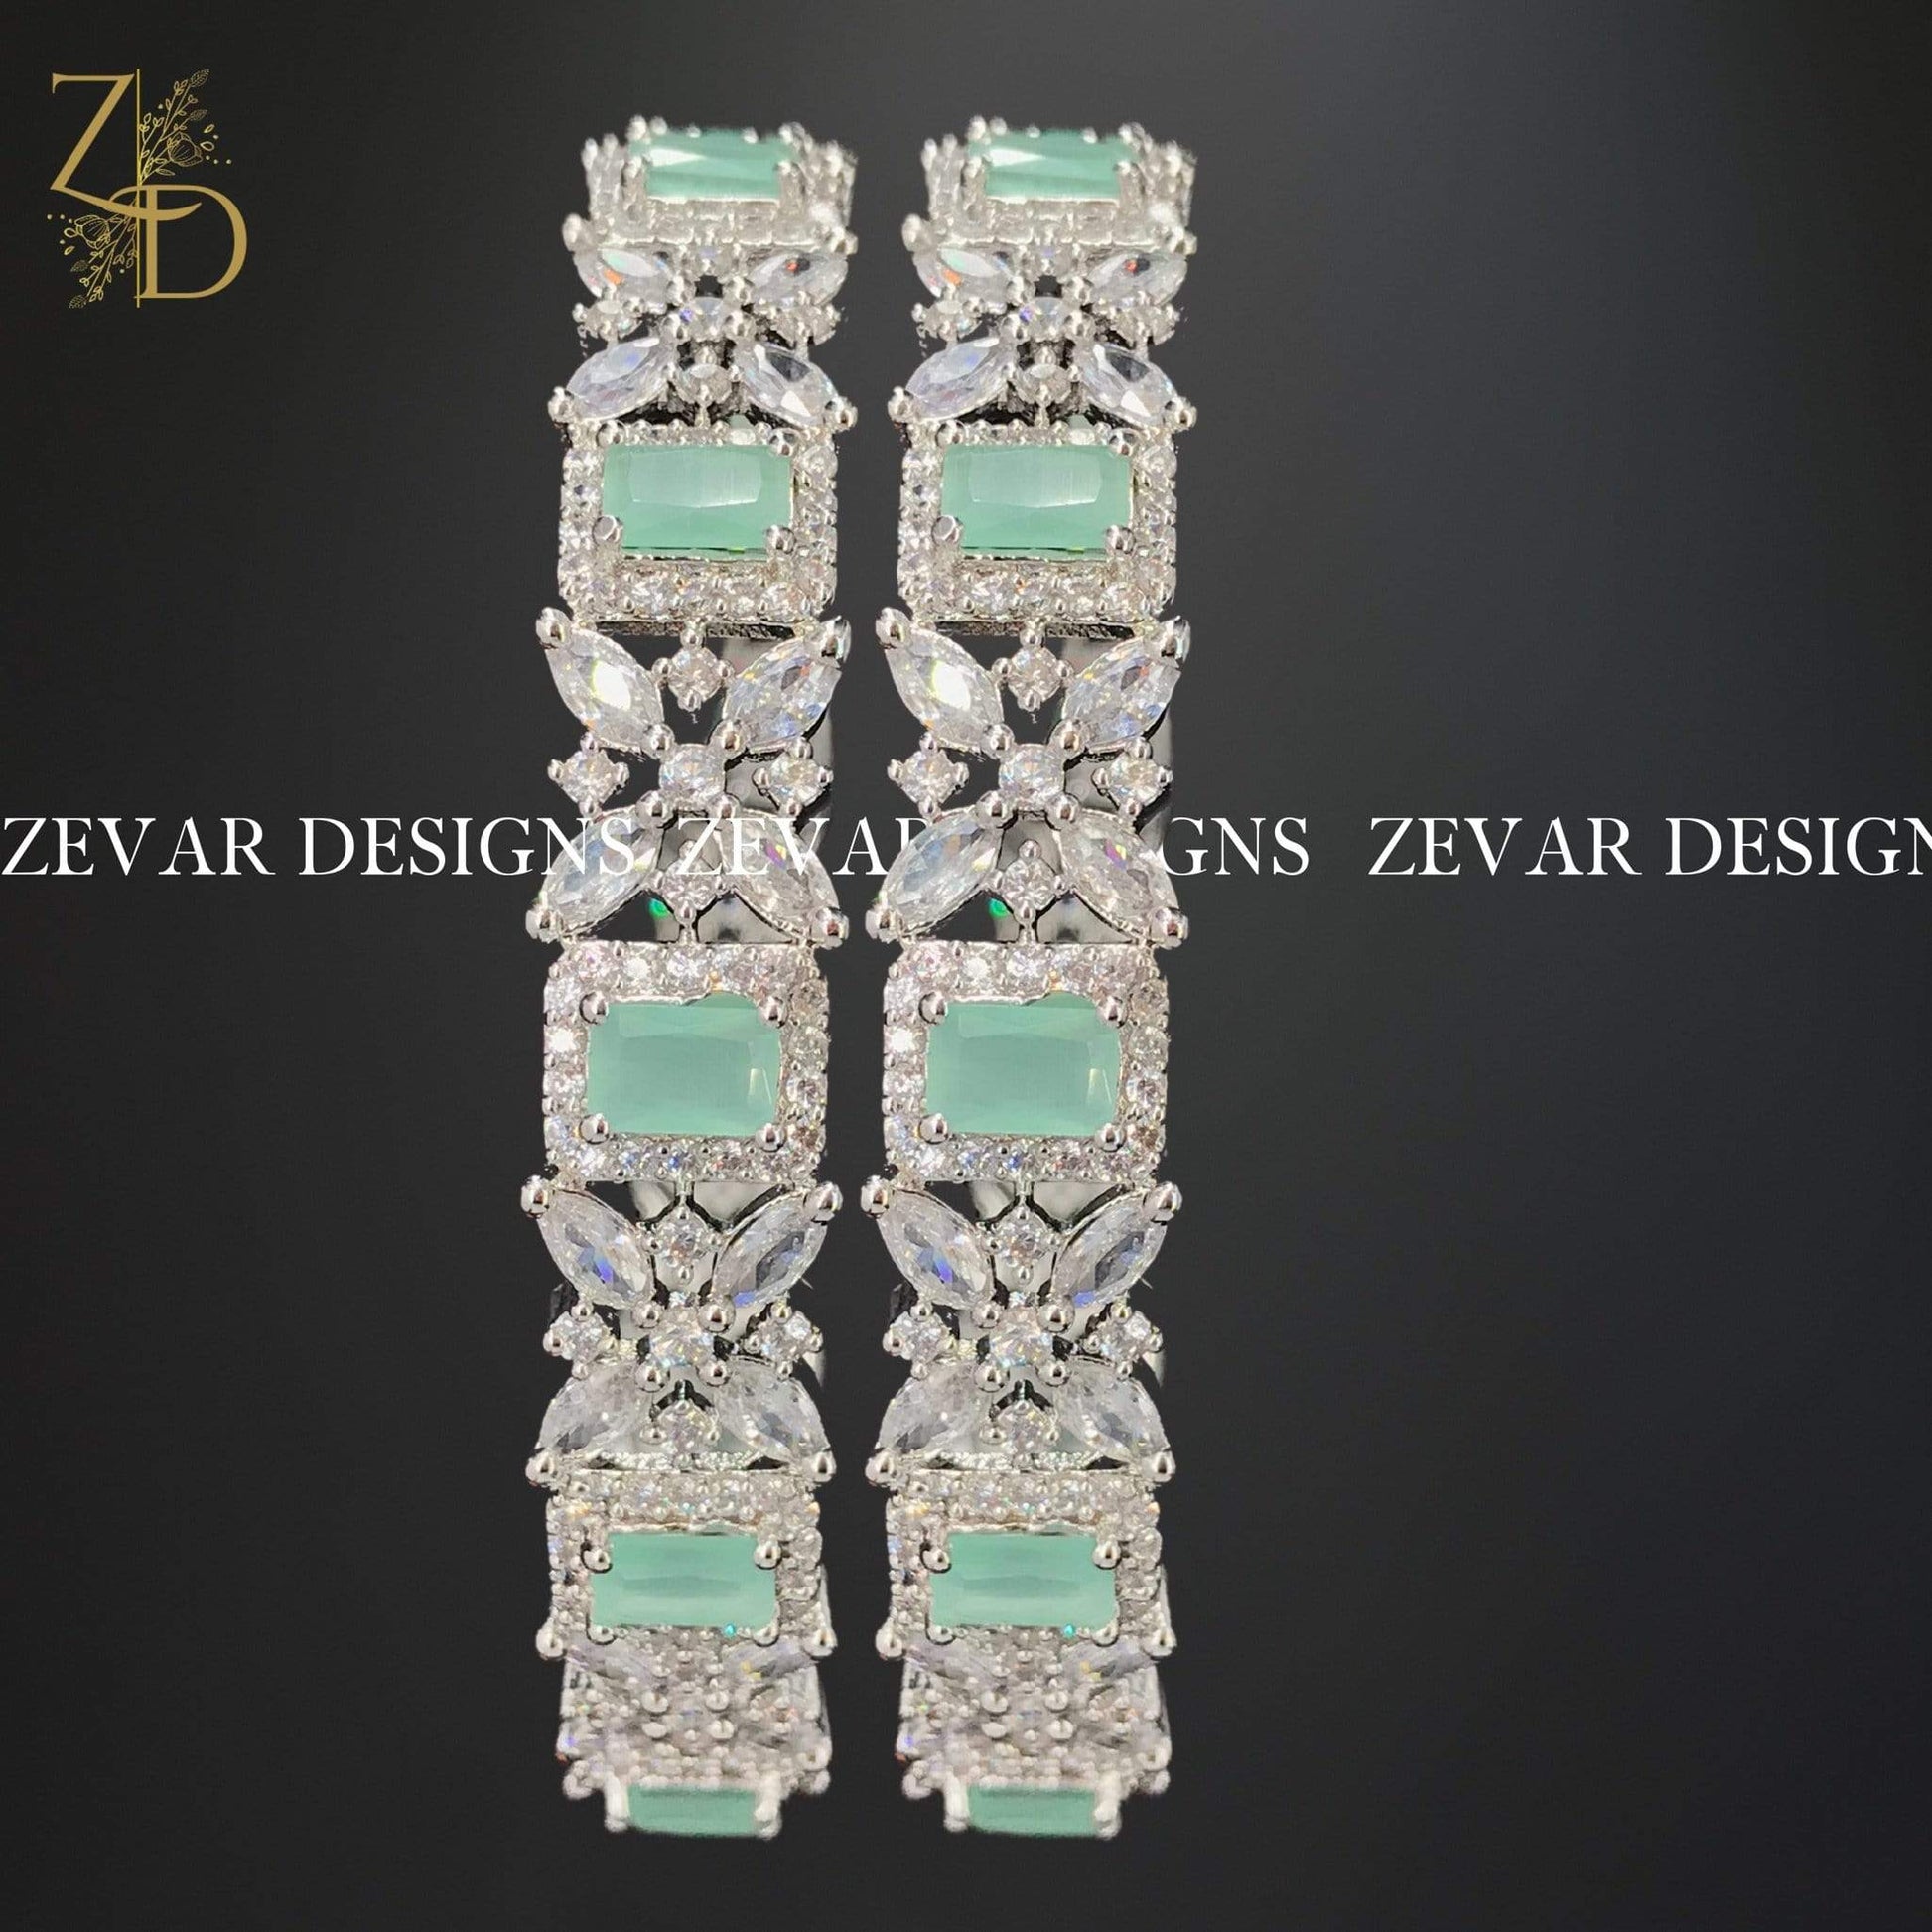 Zevar Designs Zircon Bangles Zircon Bangles (Slim) - Mint